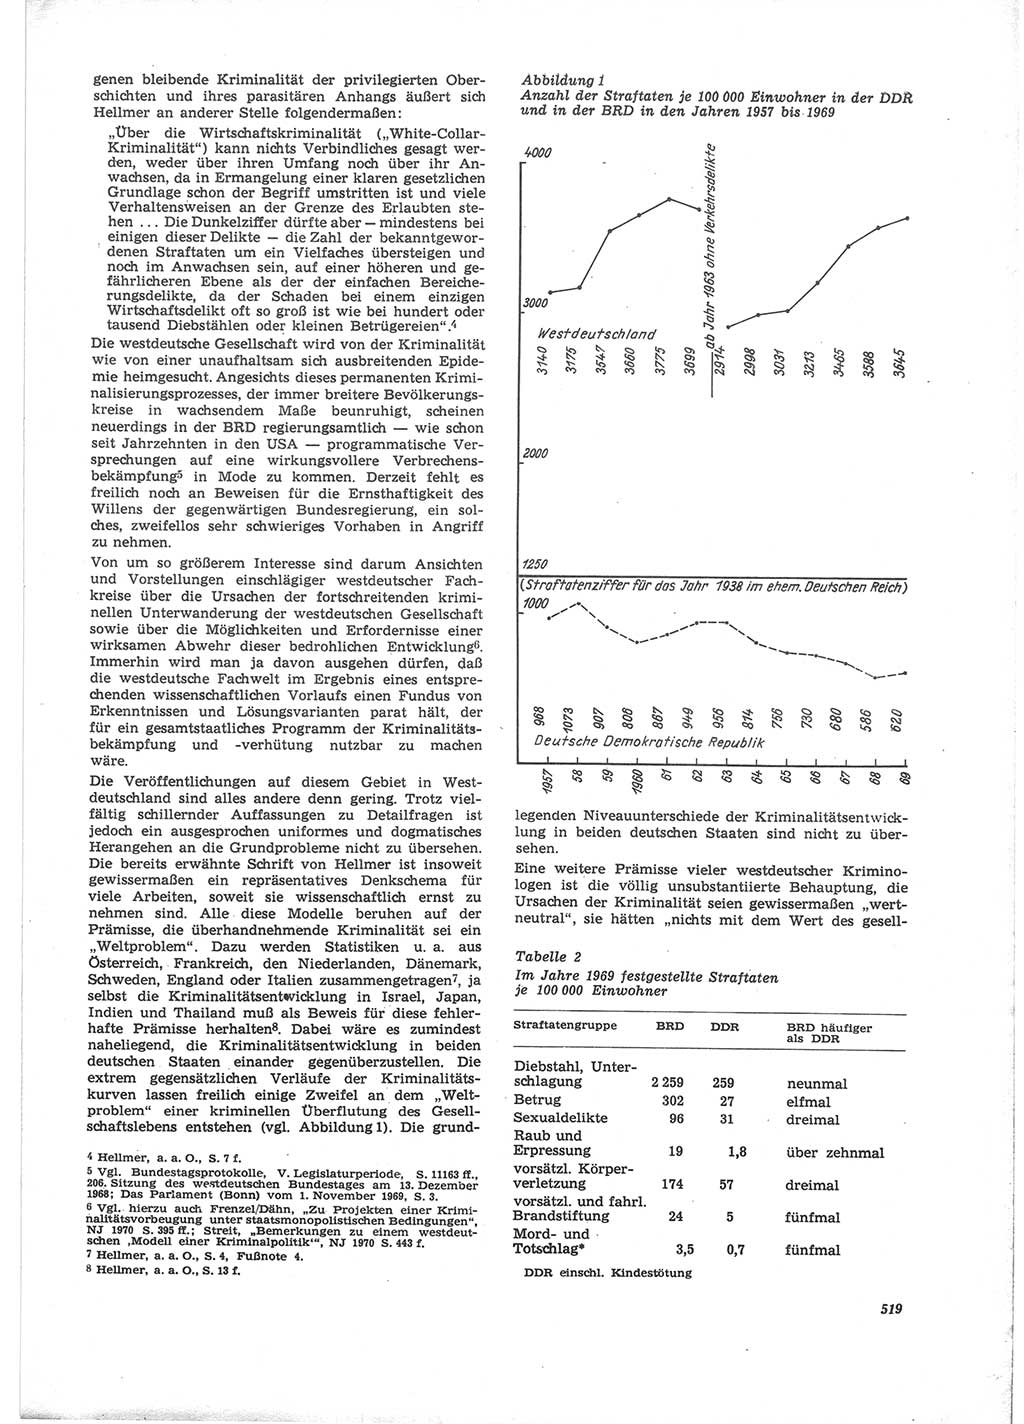 Neue Justiz (NJ), Zeitschrift für Recht und Rechtswissenschaft [Deutsche Demokratische Republik (DDR)], 24. Jahrgang 1970, Seite 519 (NJ DDR 1970, S. 519)